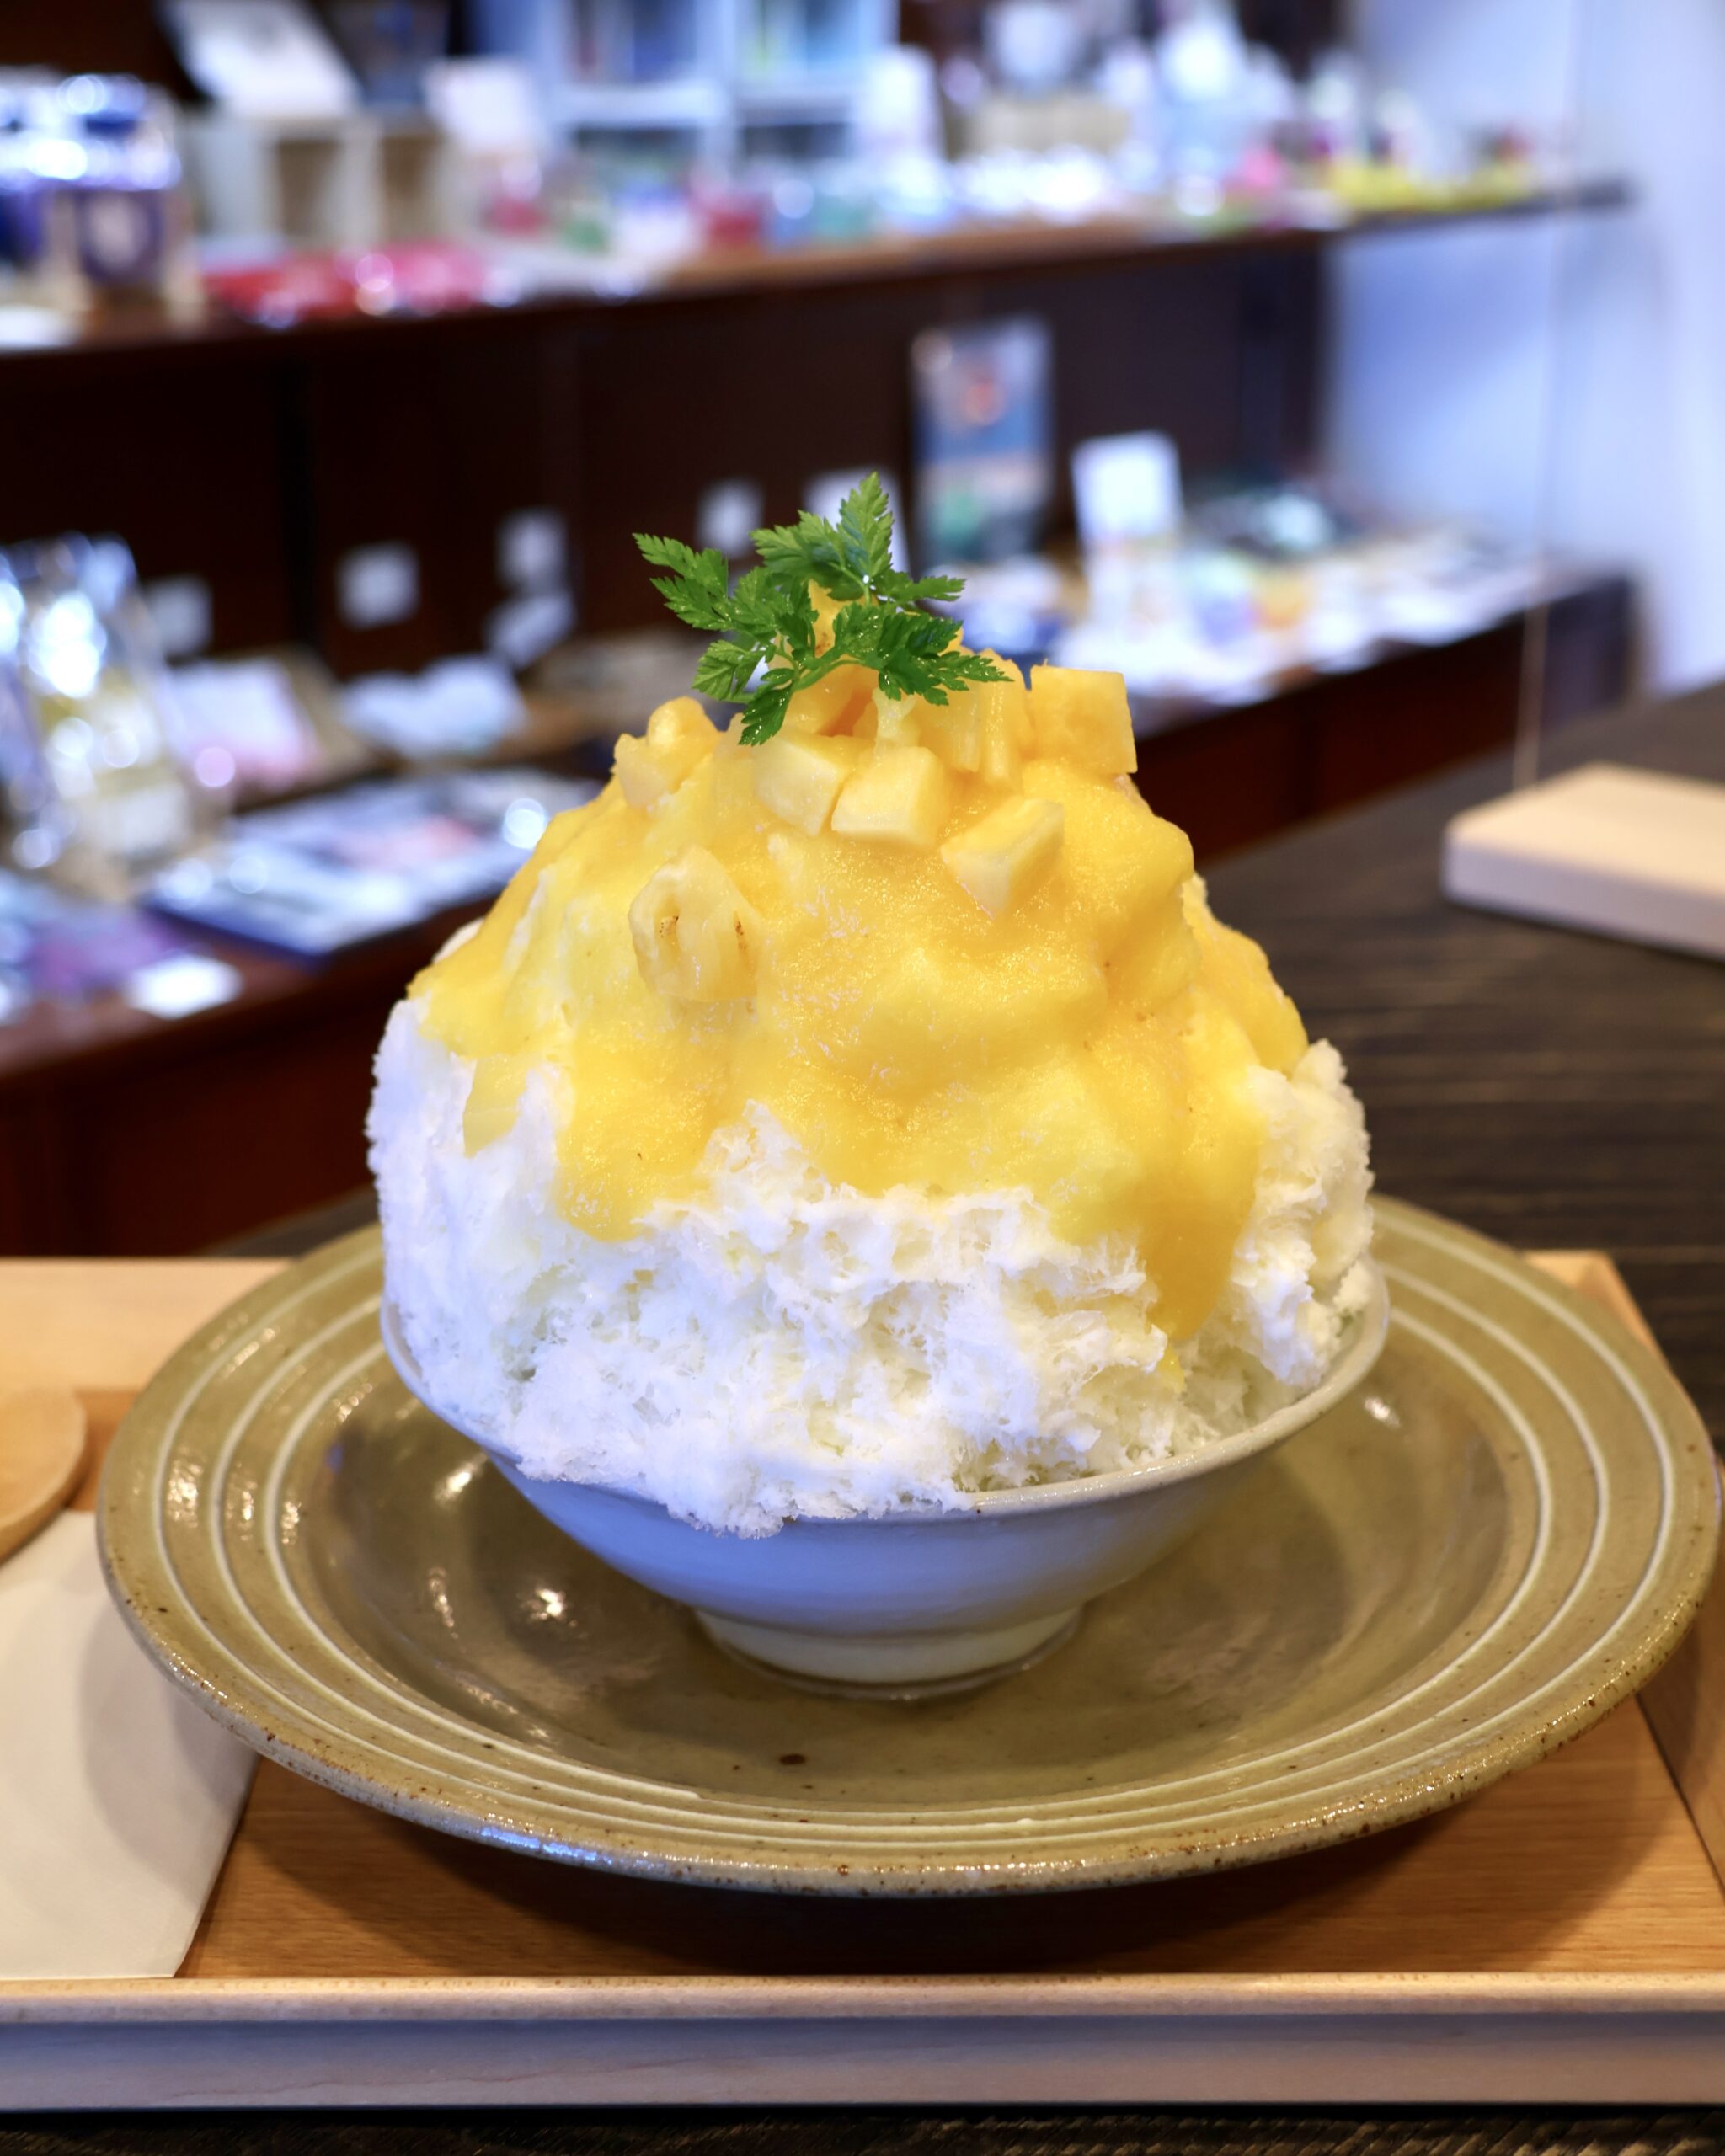 青森県弘前市にある「クラフト&和カフェ 匠館」の「パイナップルみるく氷」